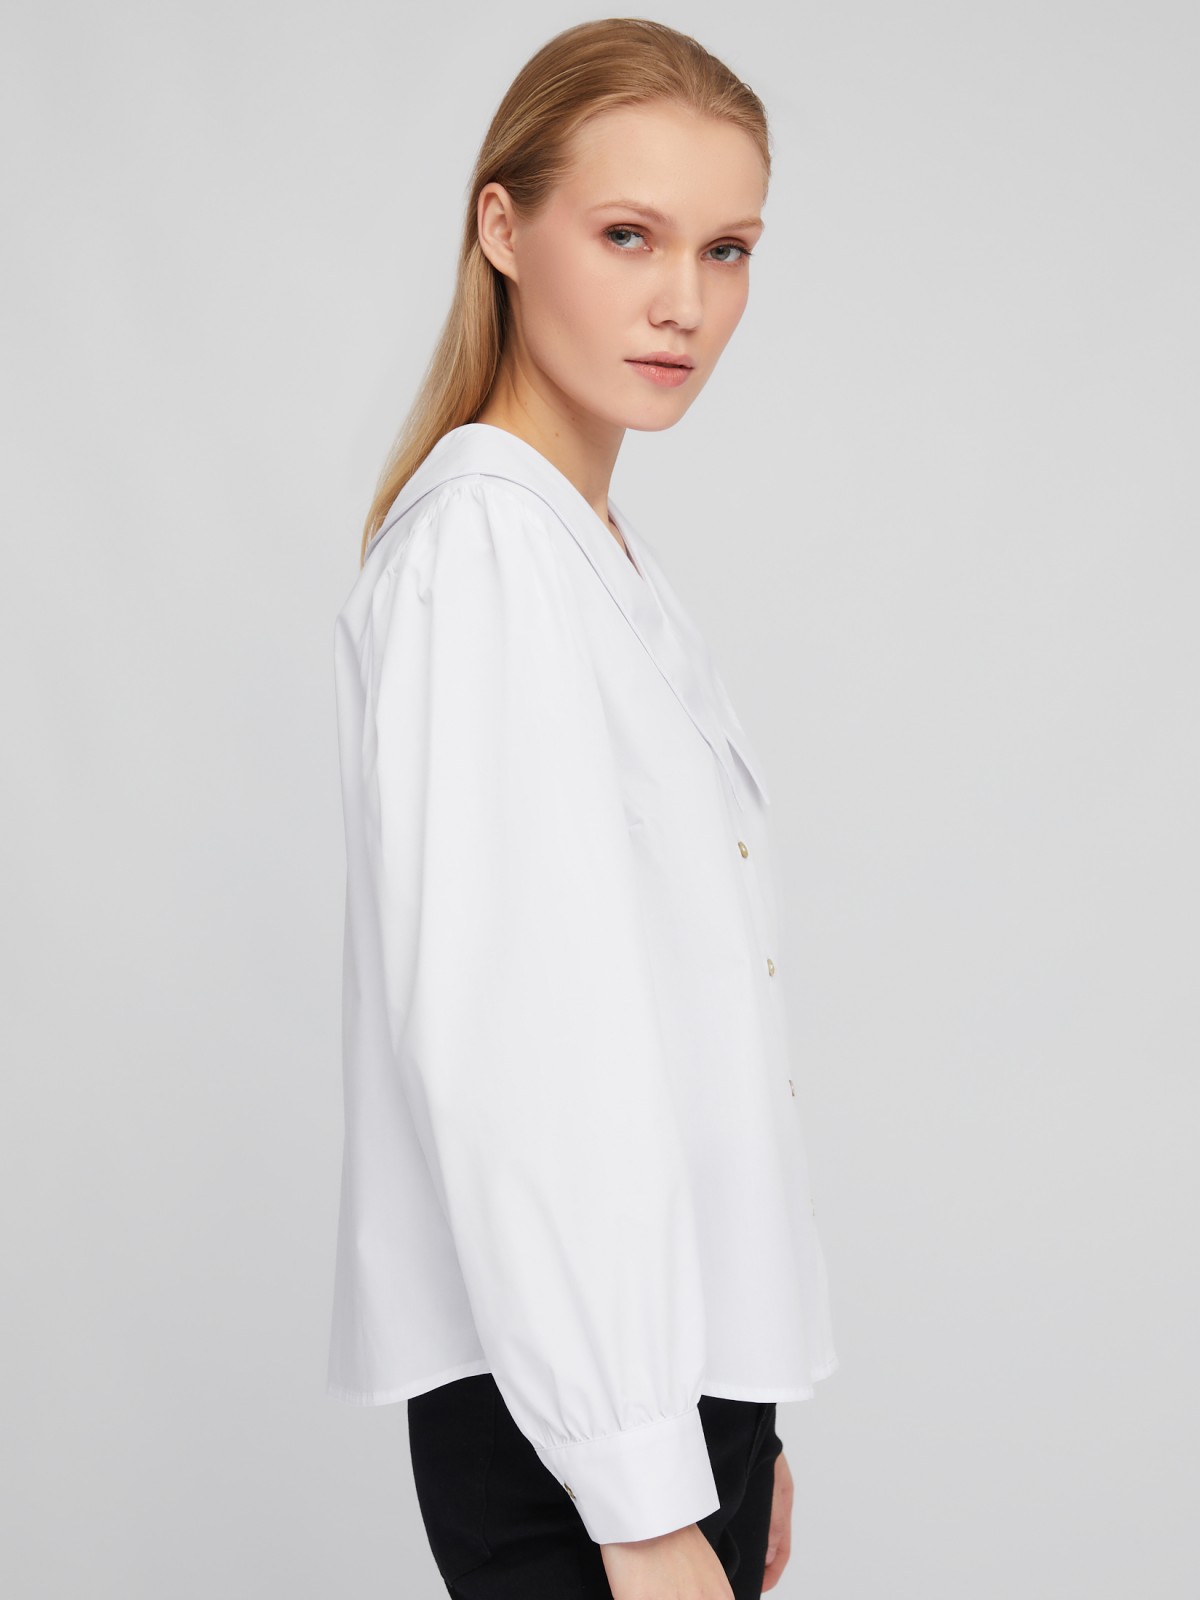 Блузка-рубашка с акцентным воротником и объёмными рукавами zolla 02411117Y593, цвет белый, размер XS - фото 4